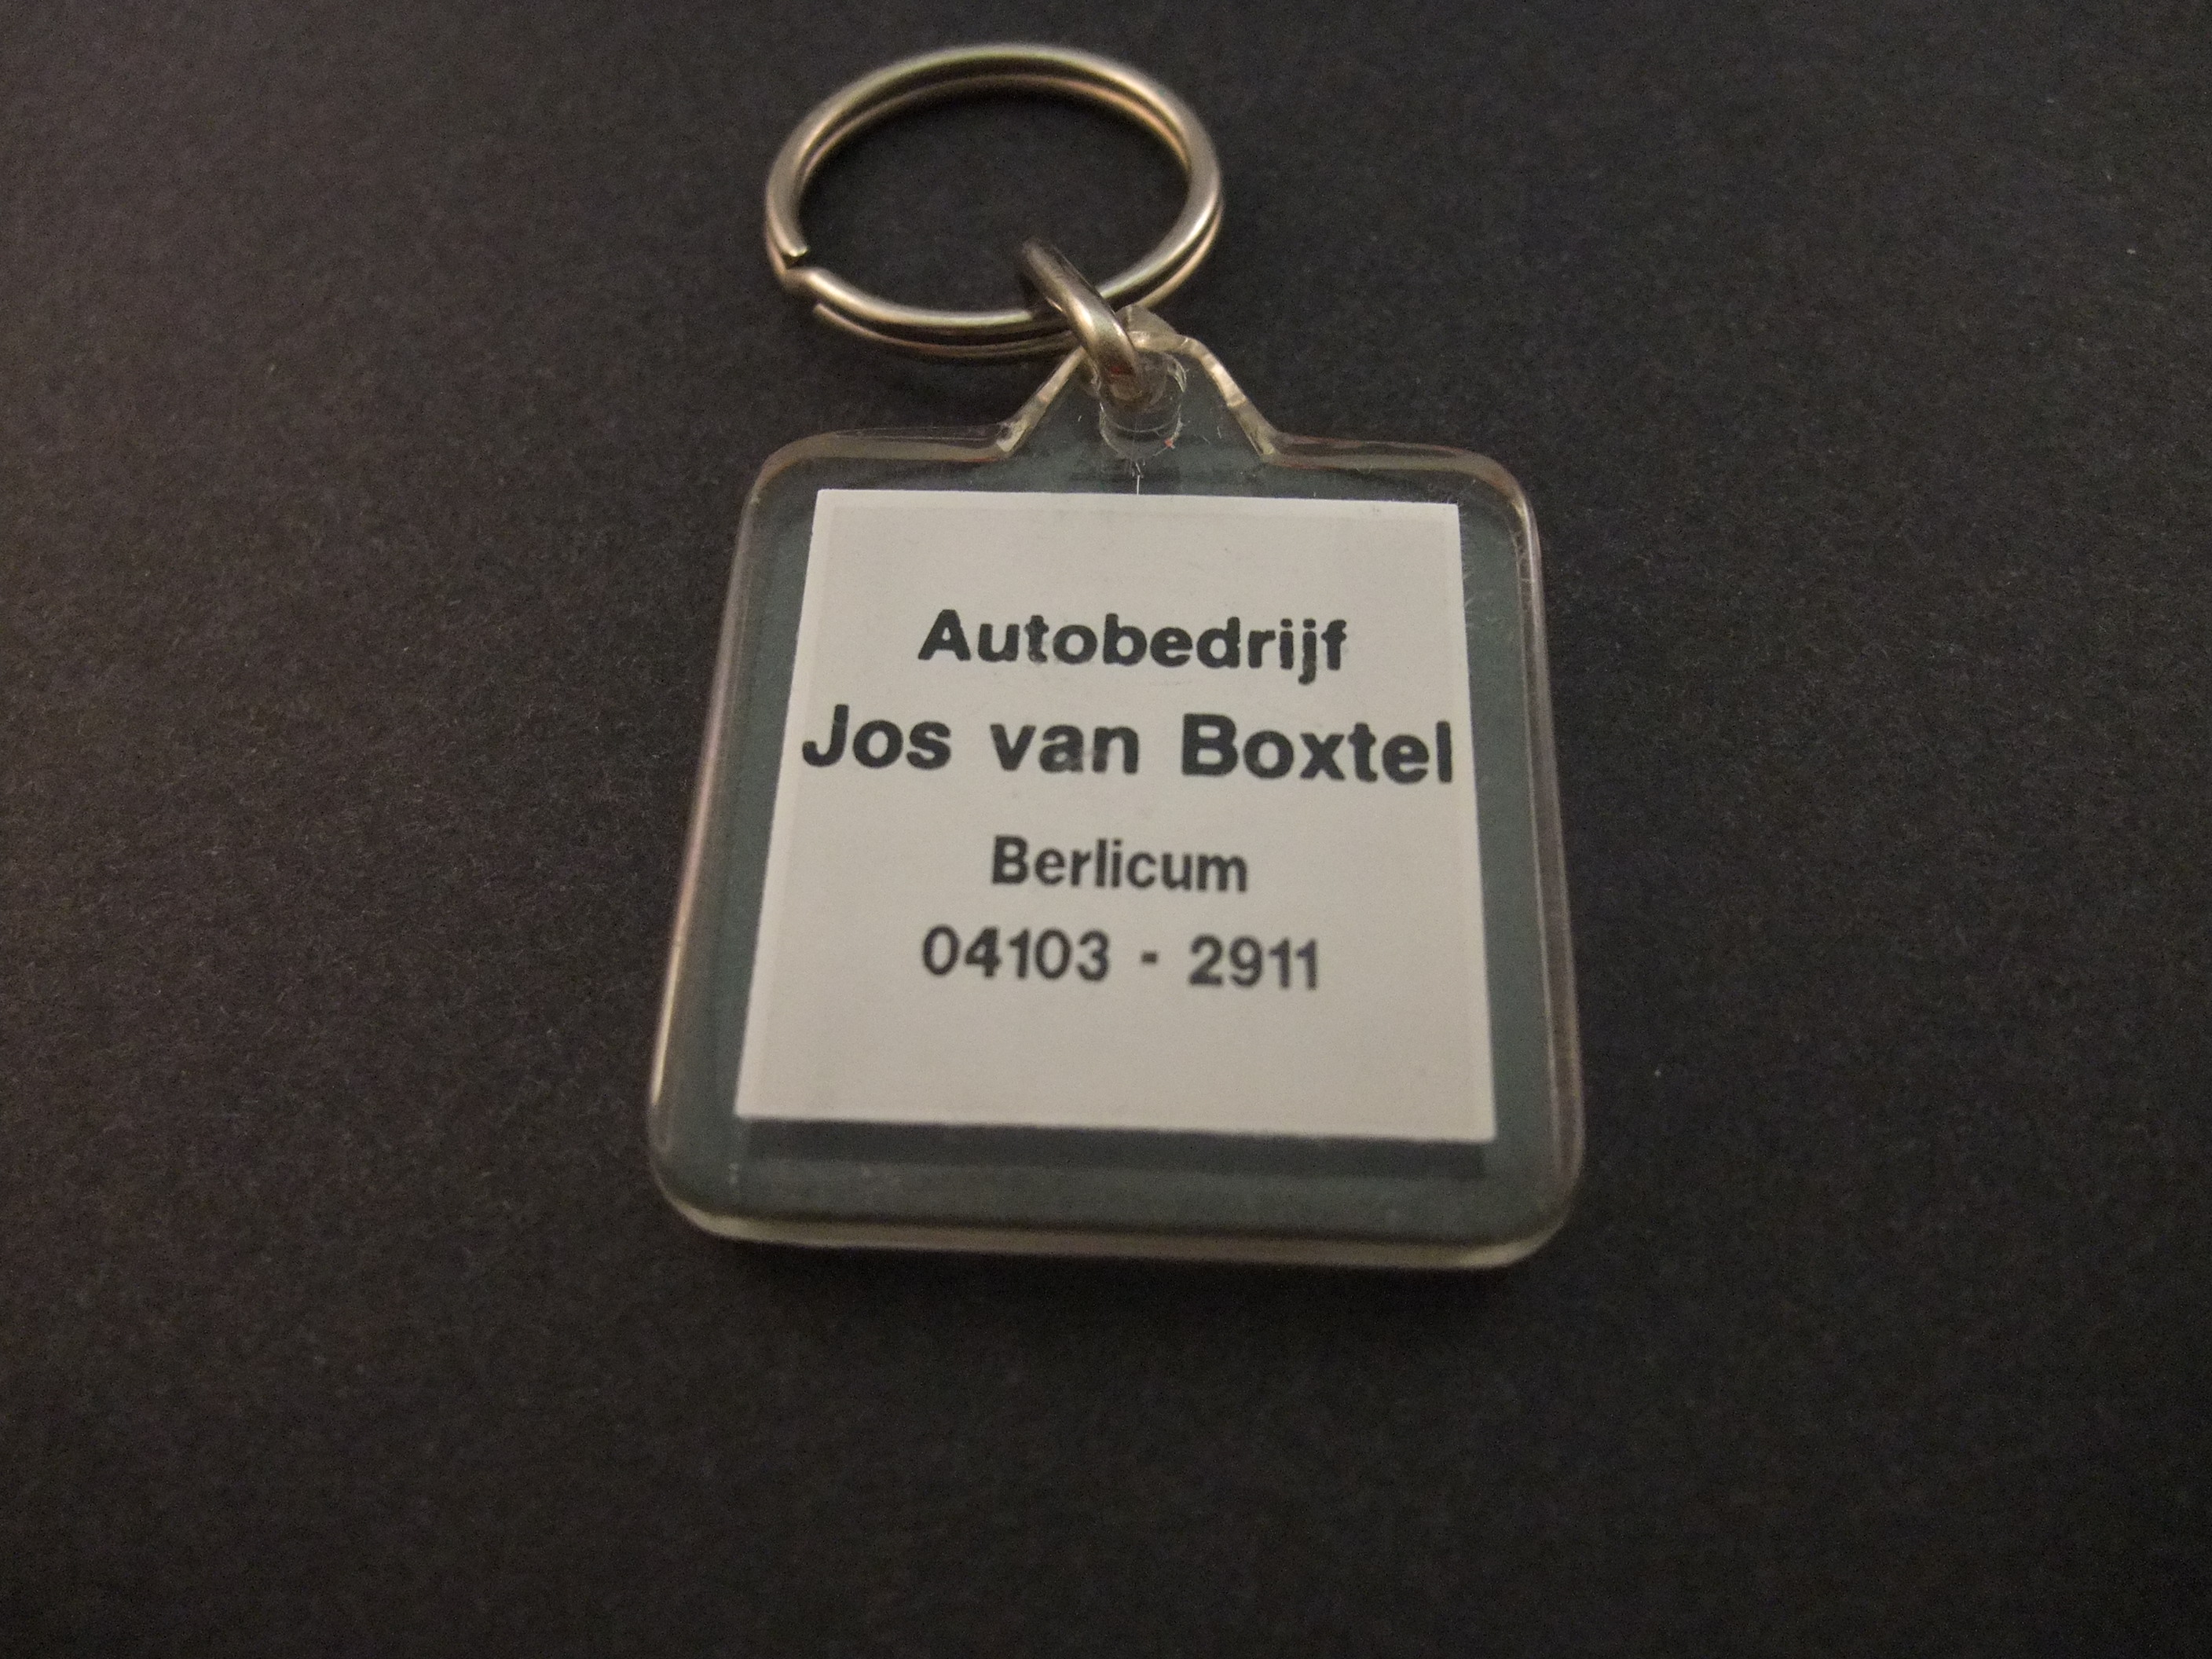 Toyota dealer Jos van Boxtel Oss Berlicum sleutelhanger (2)